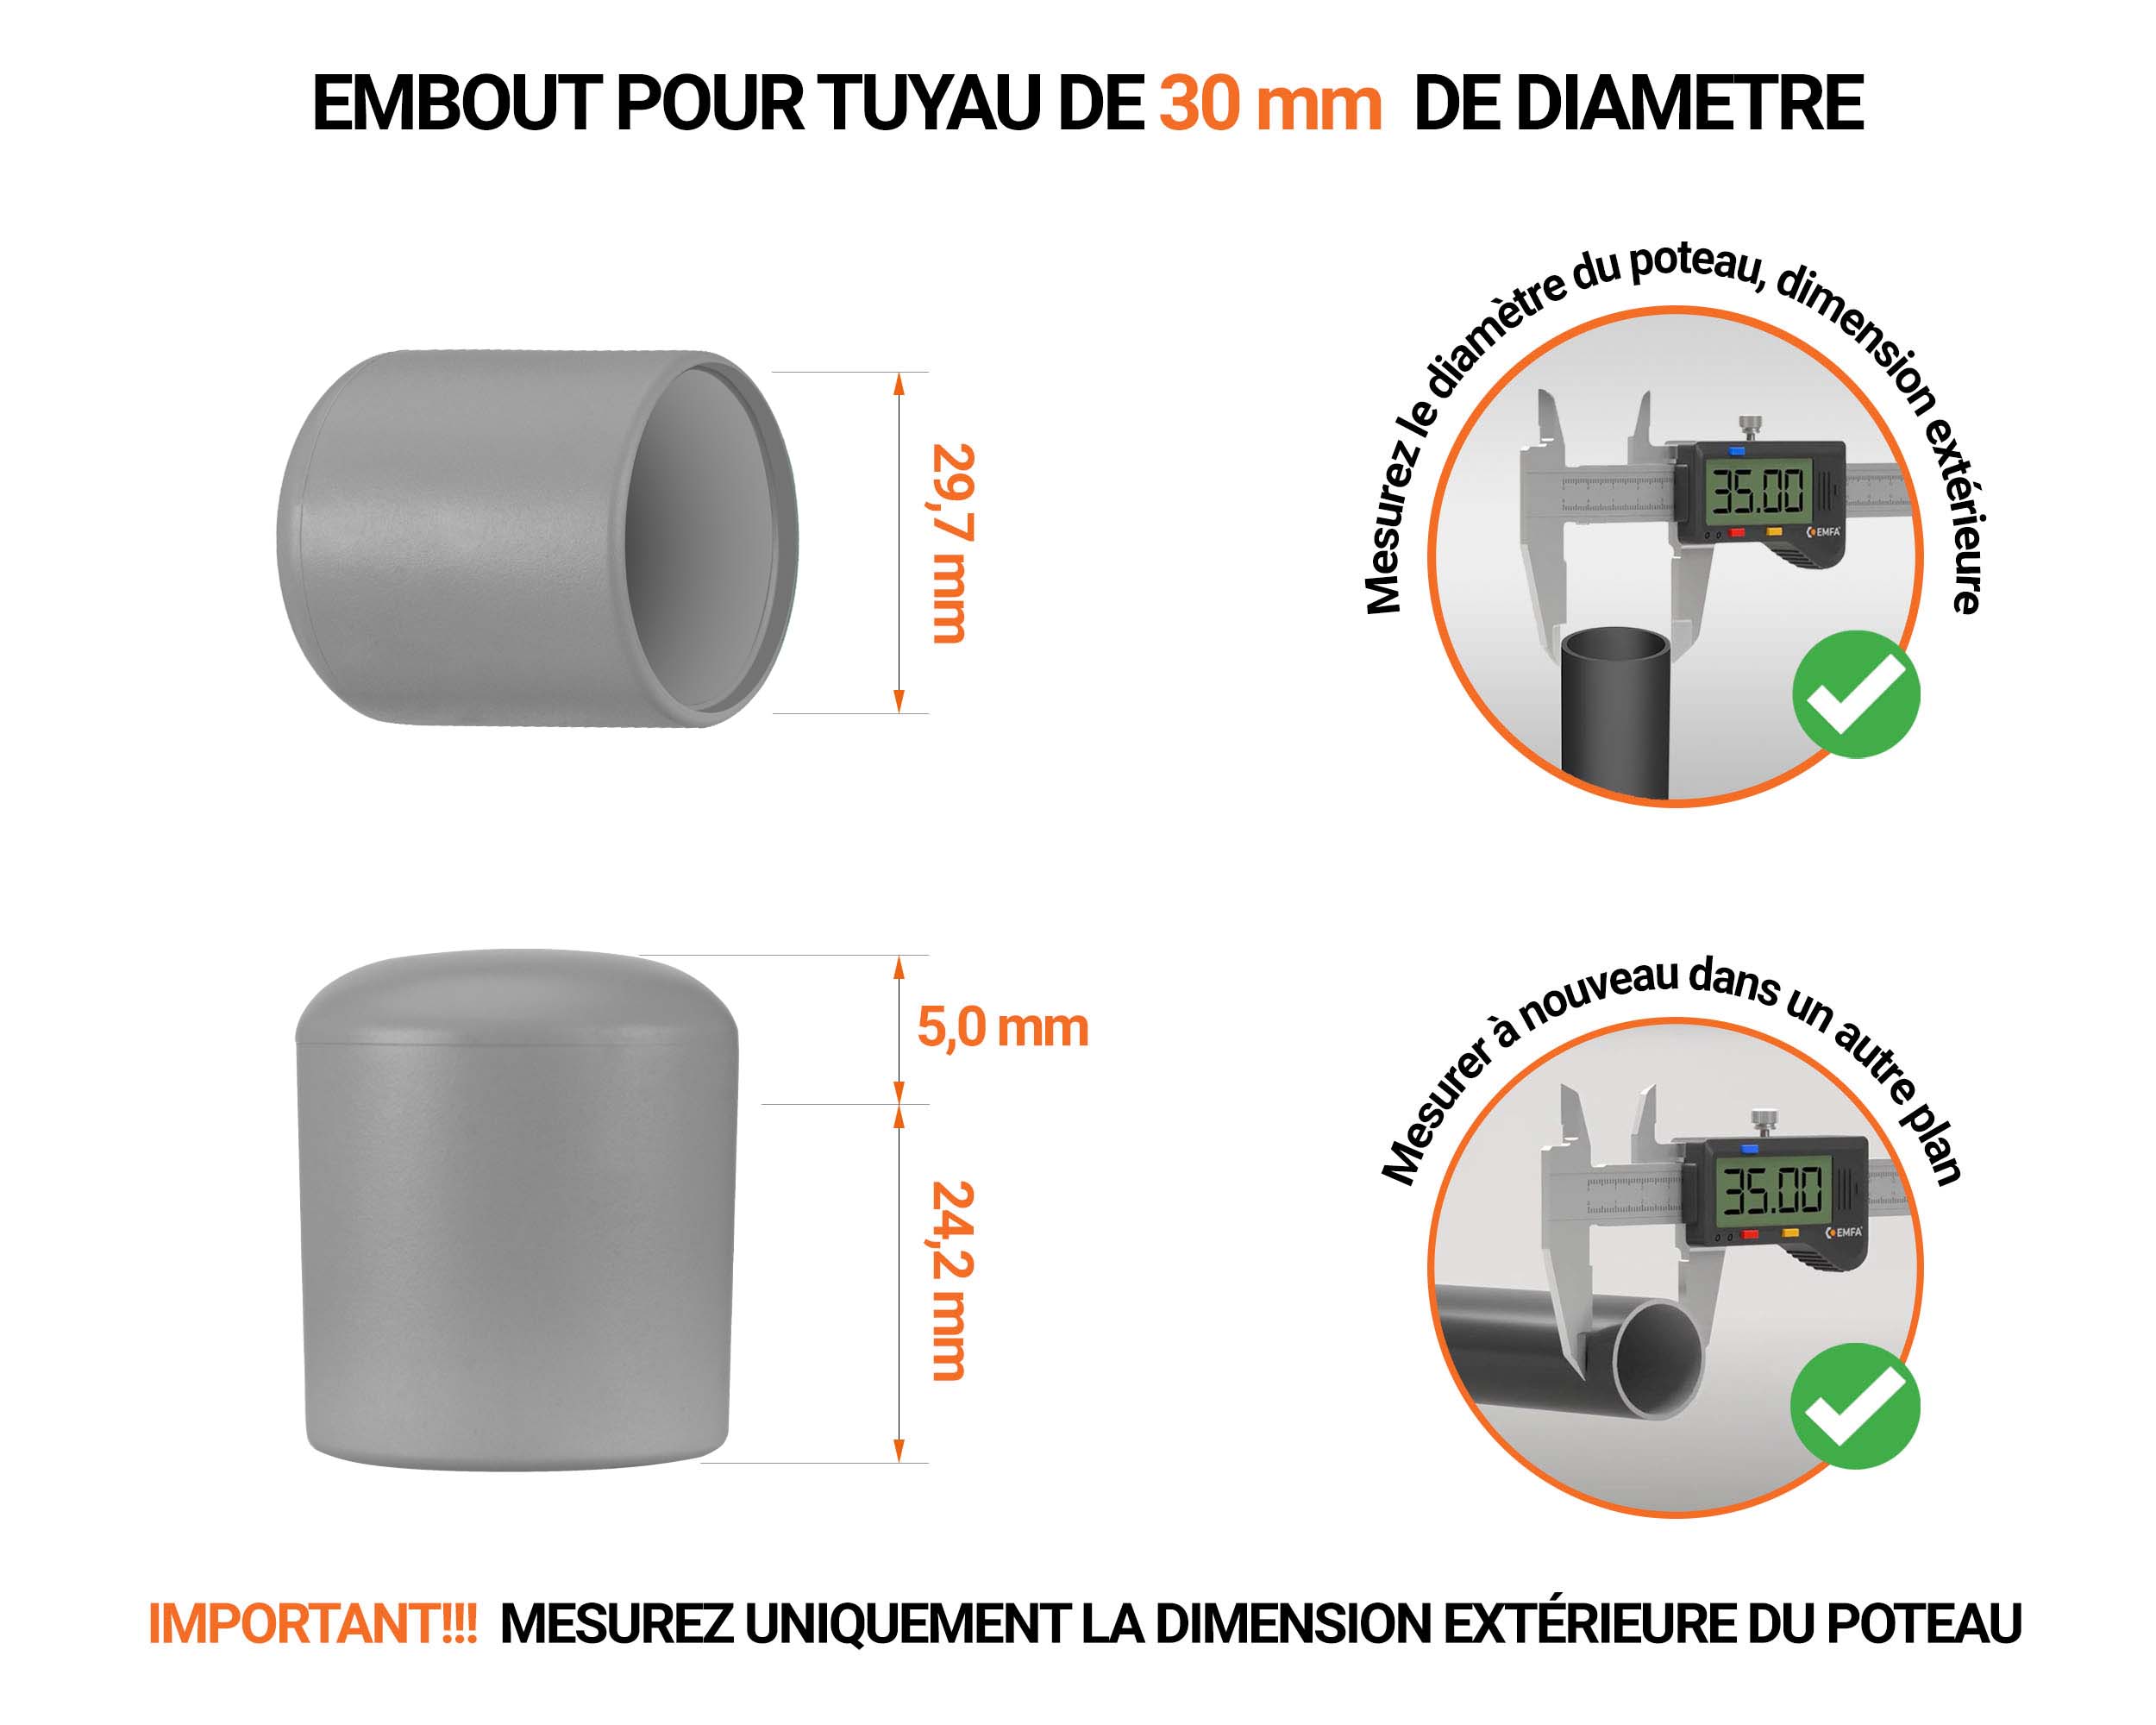 Embout noir de diamètre extérieur 30 mm pour tube rond avec dimensions et guide de mesure correcte du bouchon plastique.